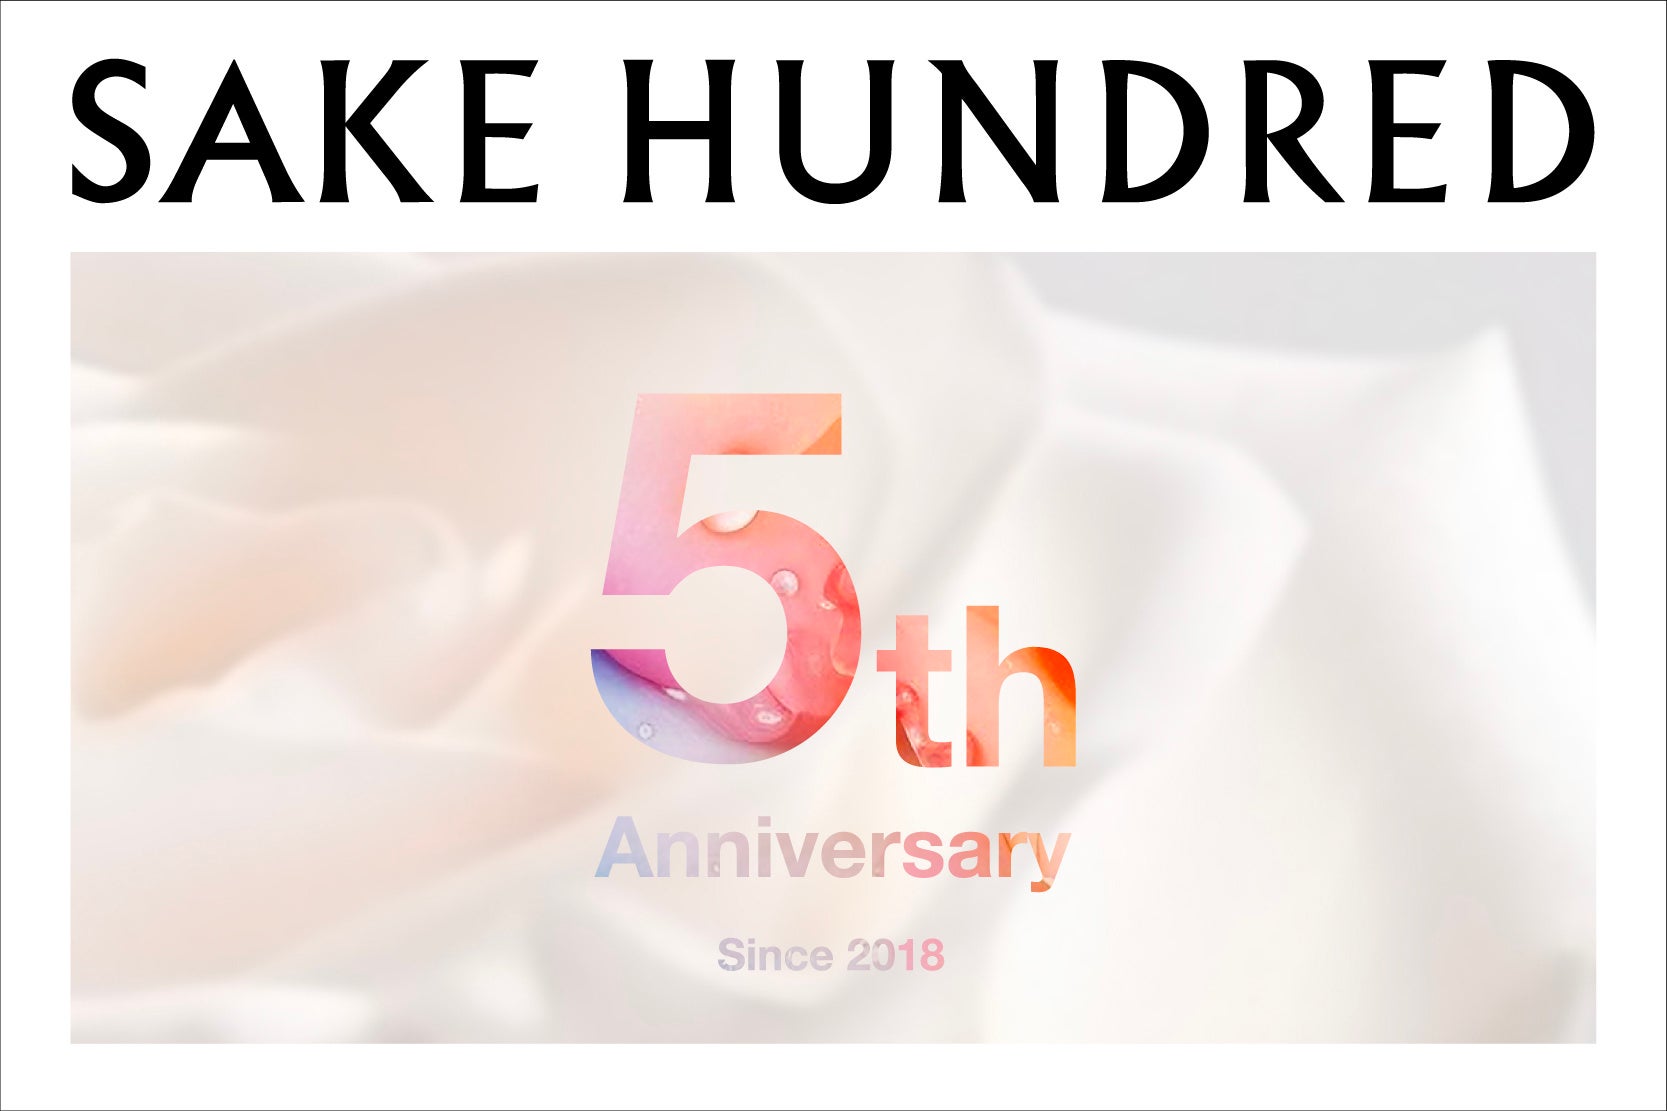 未公開商品を贈呈。5周年を迎える日本酒ブランド「SAKE HUNDRED」がエピソードを募集。6月20日まで